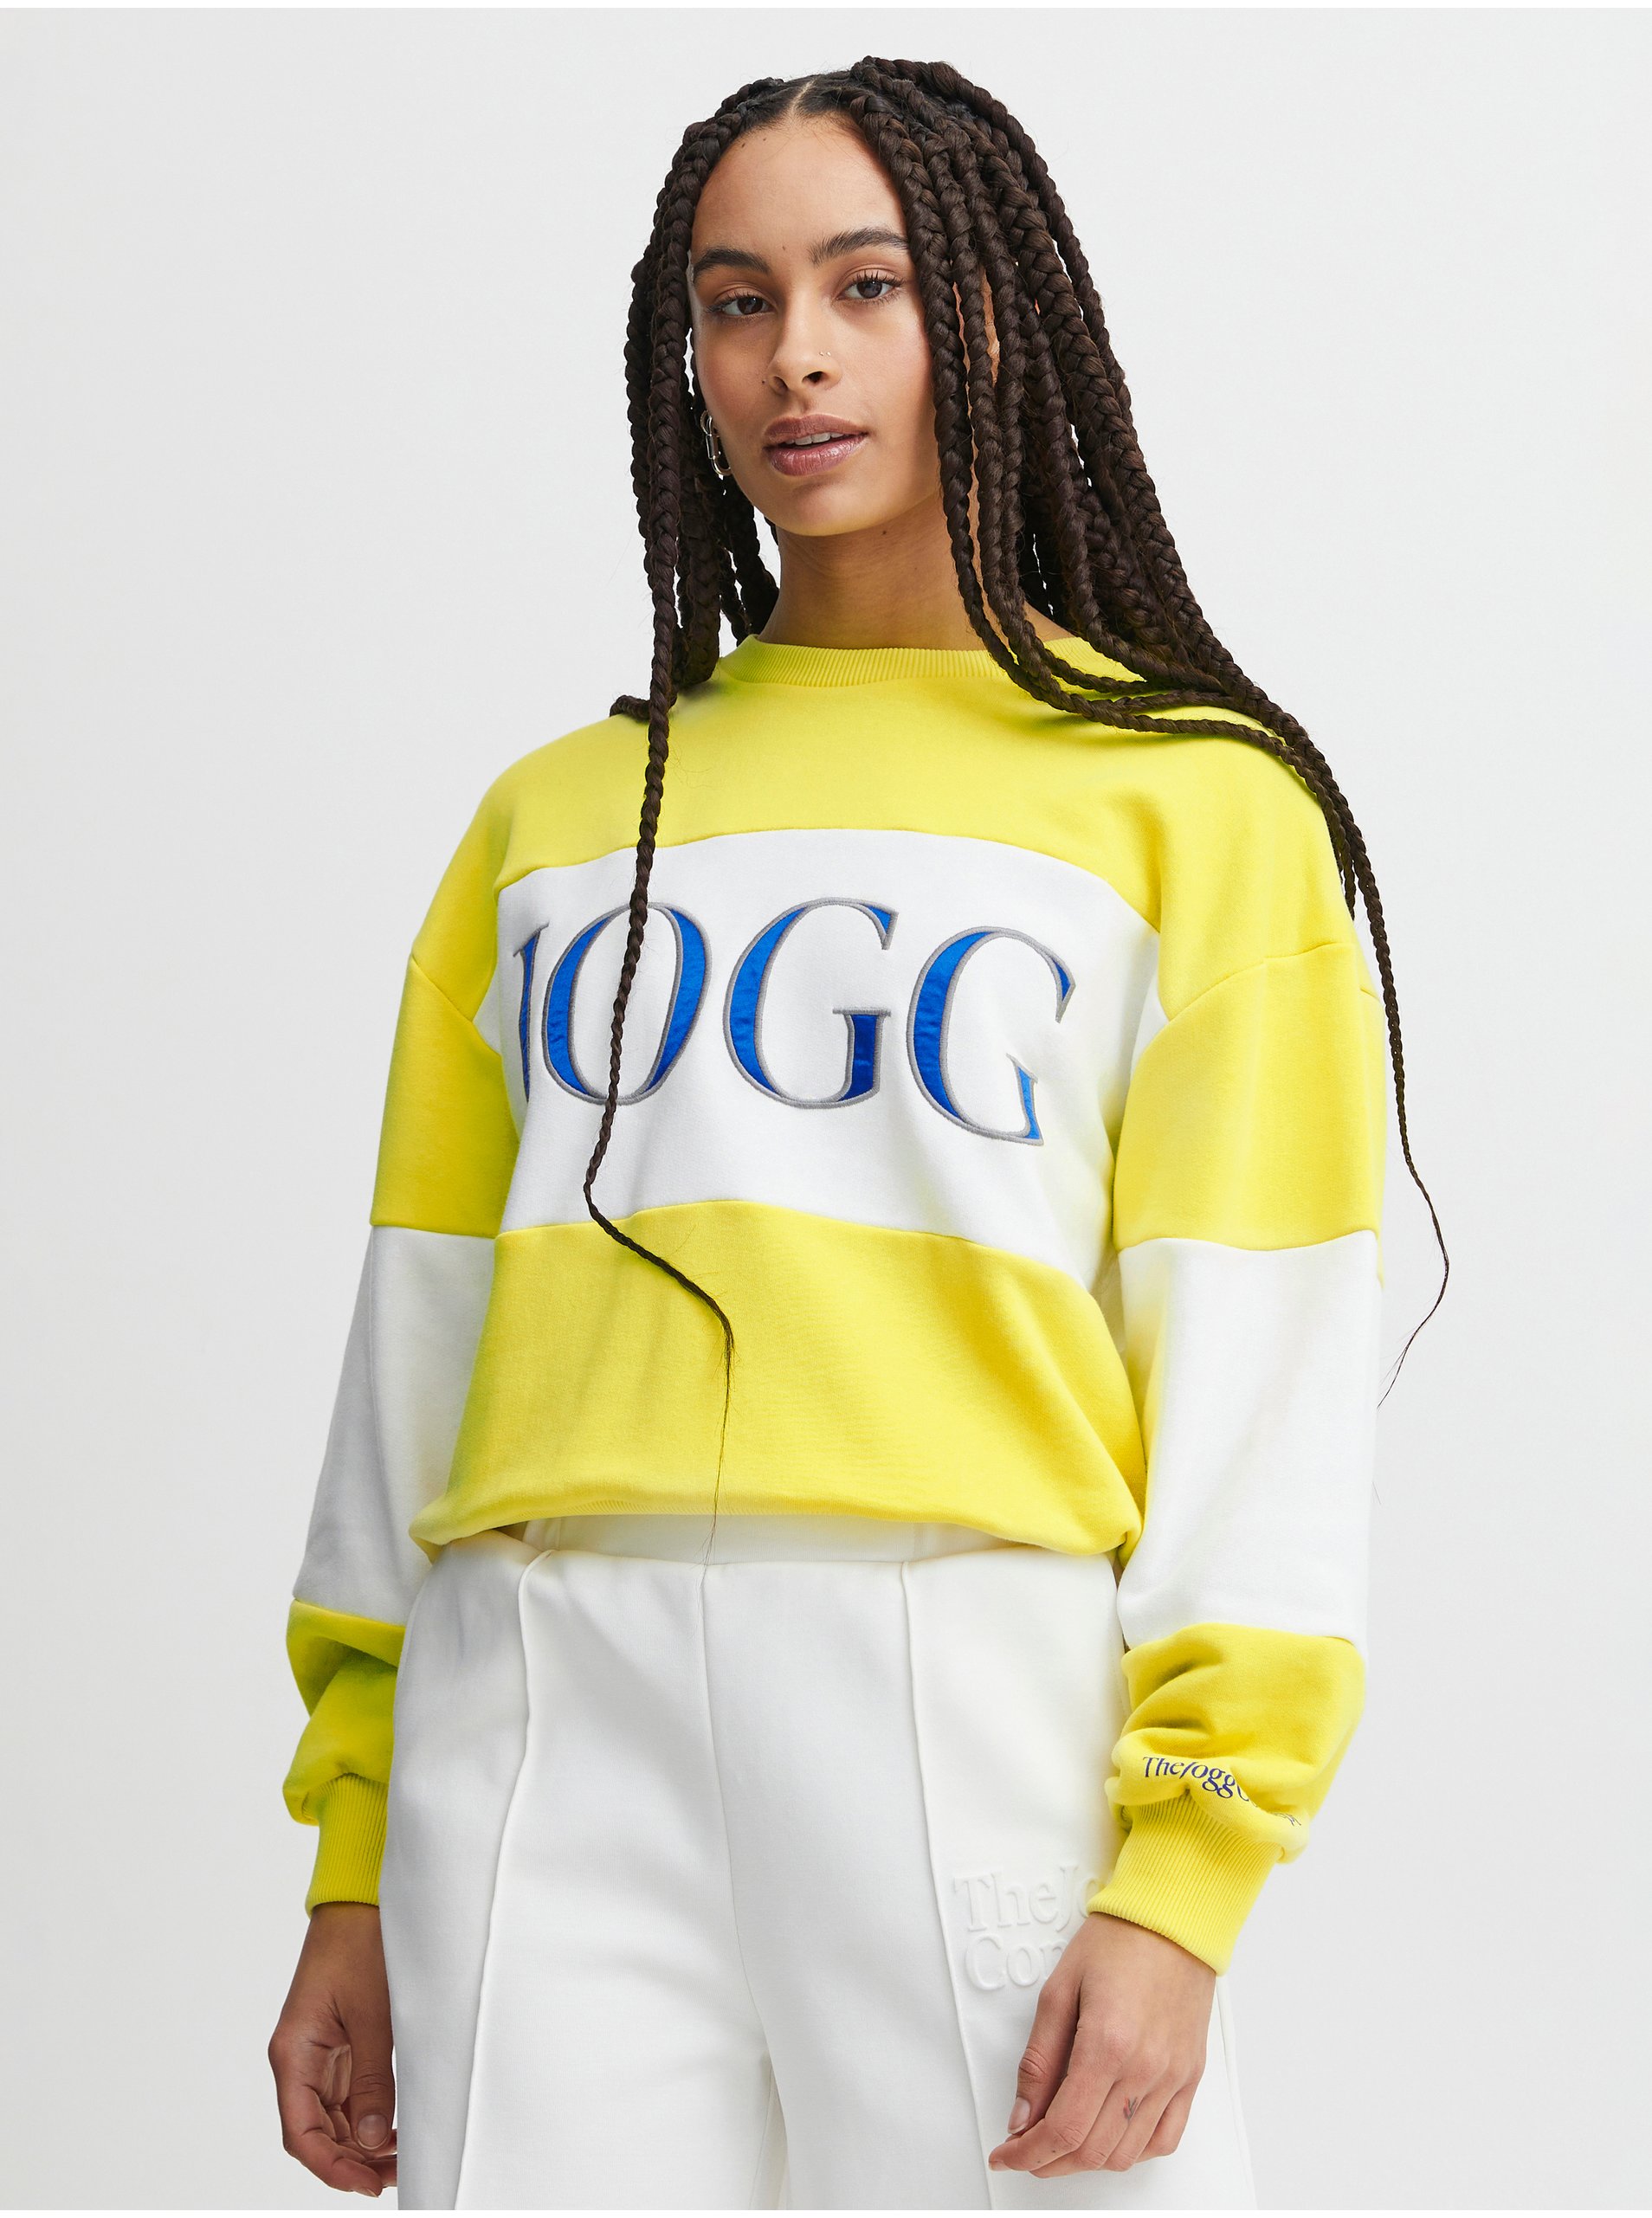 E-shop Mikiny pre ženy The Jogg Concept - žltá, biela